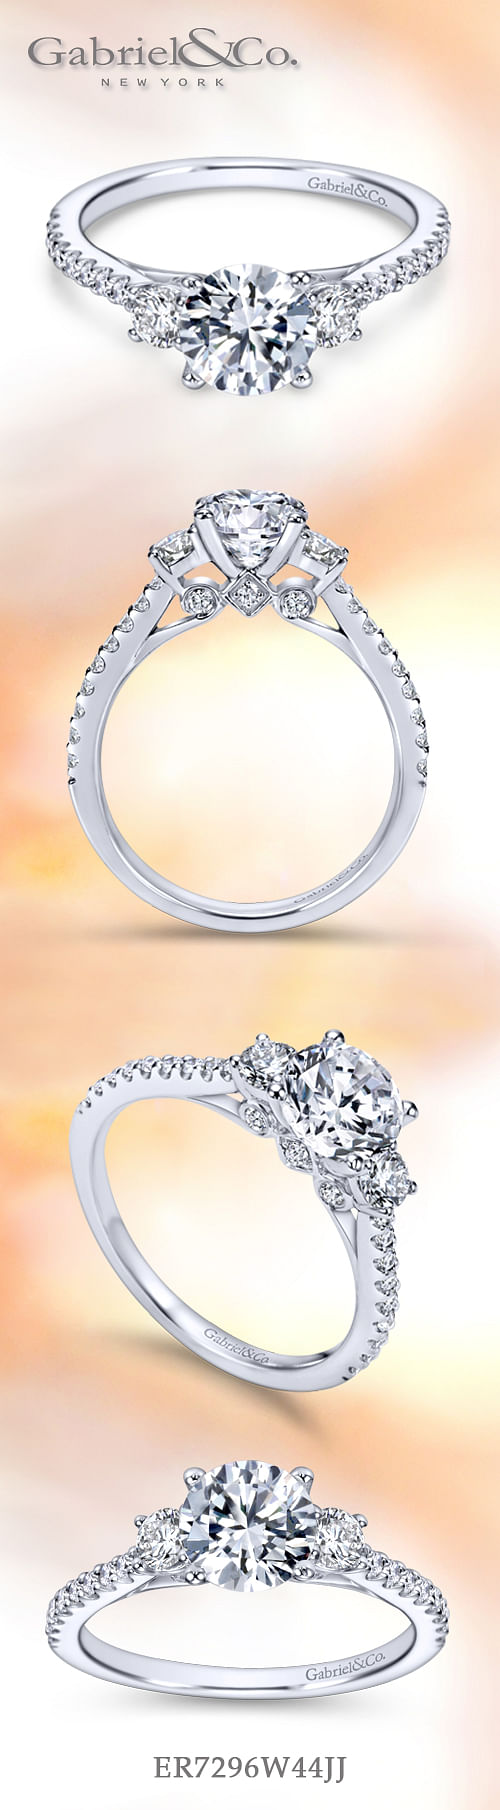 14K White Gold Round Three Stone Diamond Engagement Ring angle 